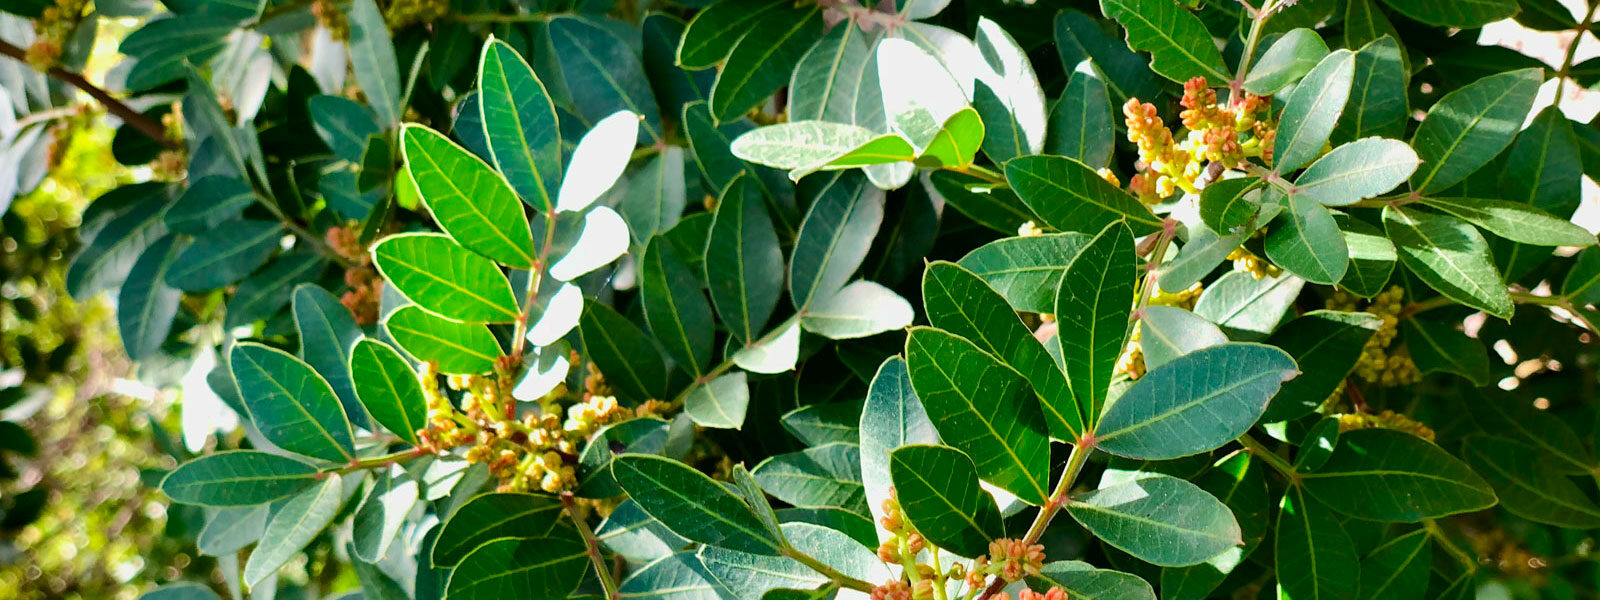 pistacja lentyszek - klejsta, Pistacja kleista, pistacja lentyszek, mastyksowe drzewo (Pistacia lentiscus L.)